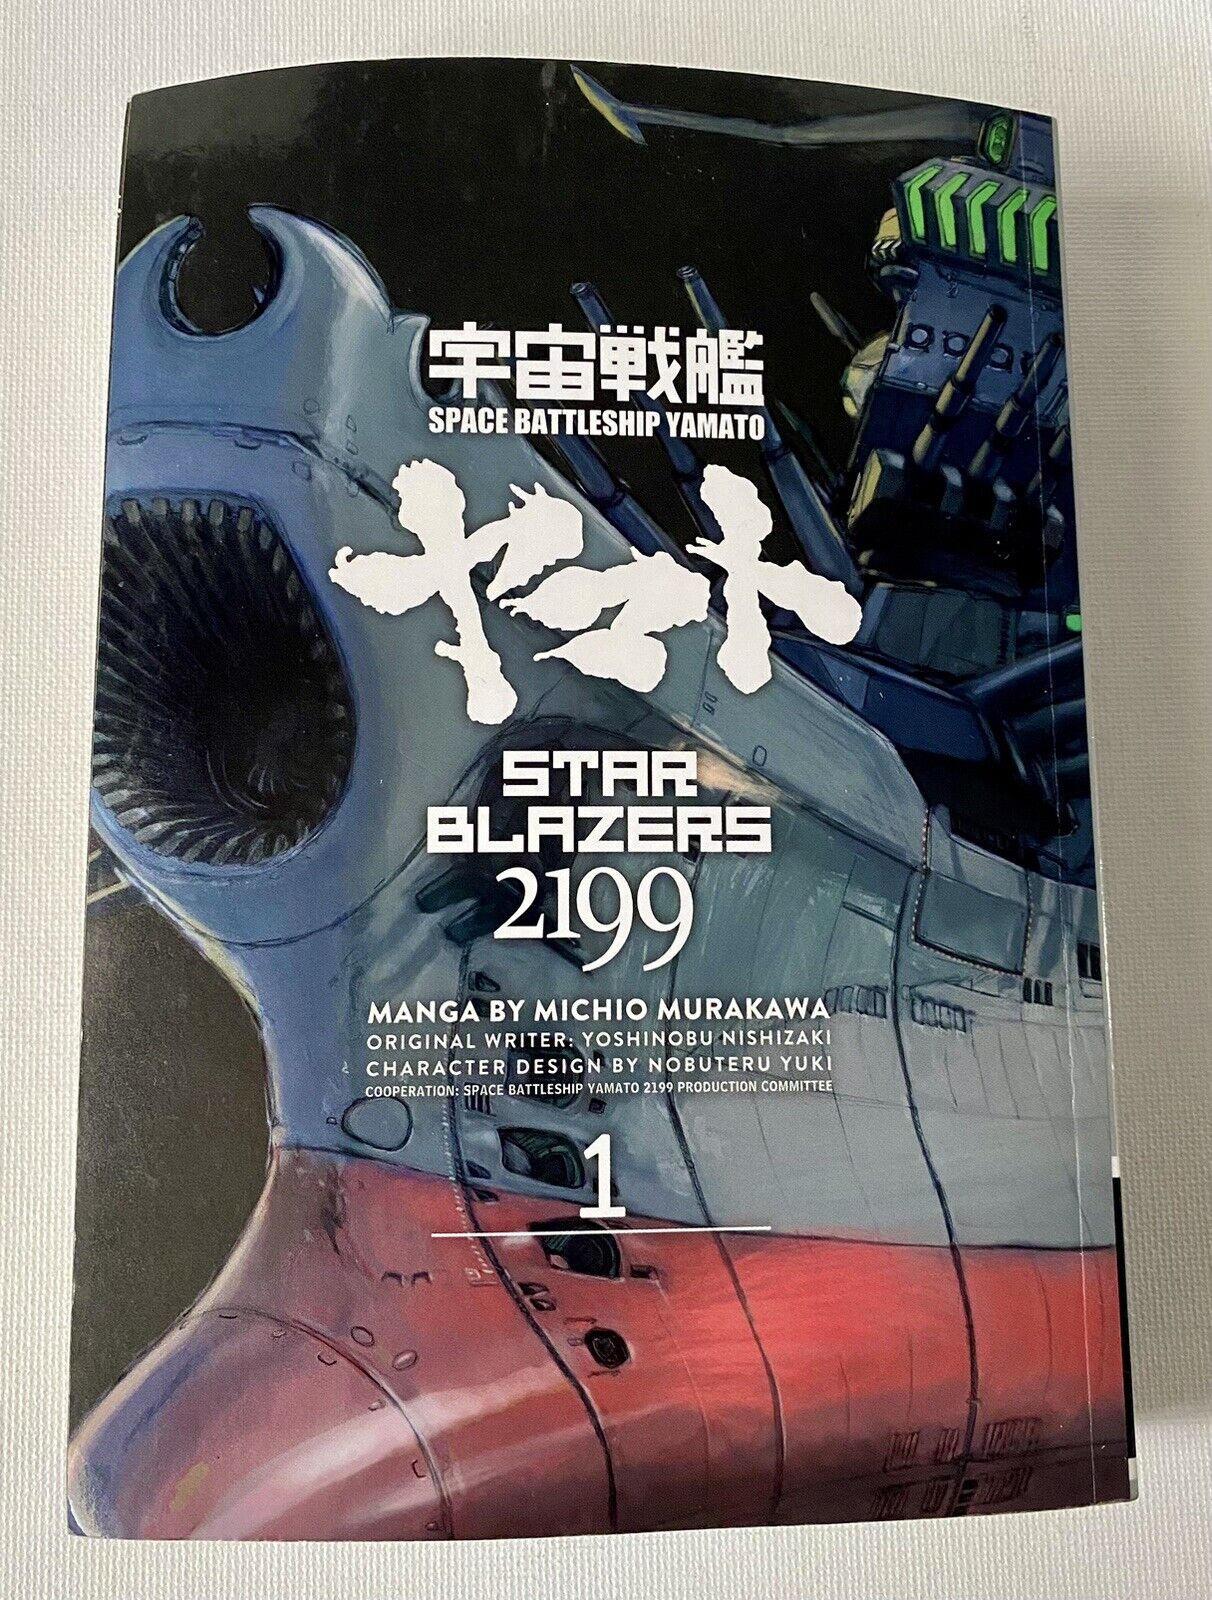 Manga - Star Blazers 2199 Volume 1 - Space Battleship Yamato - Anime - Murakawa